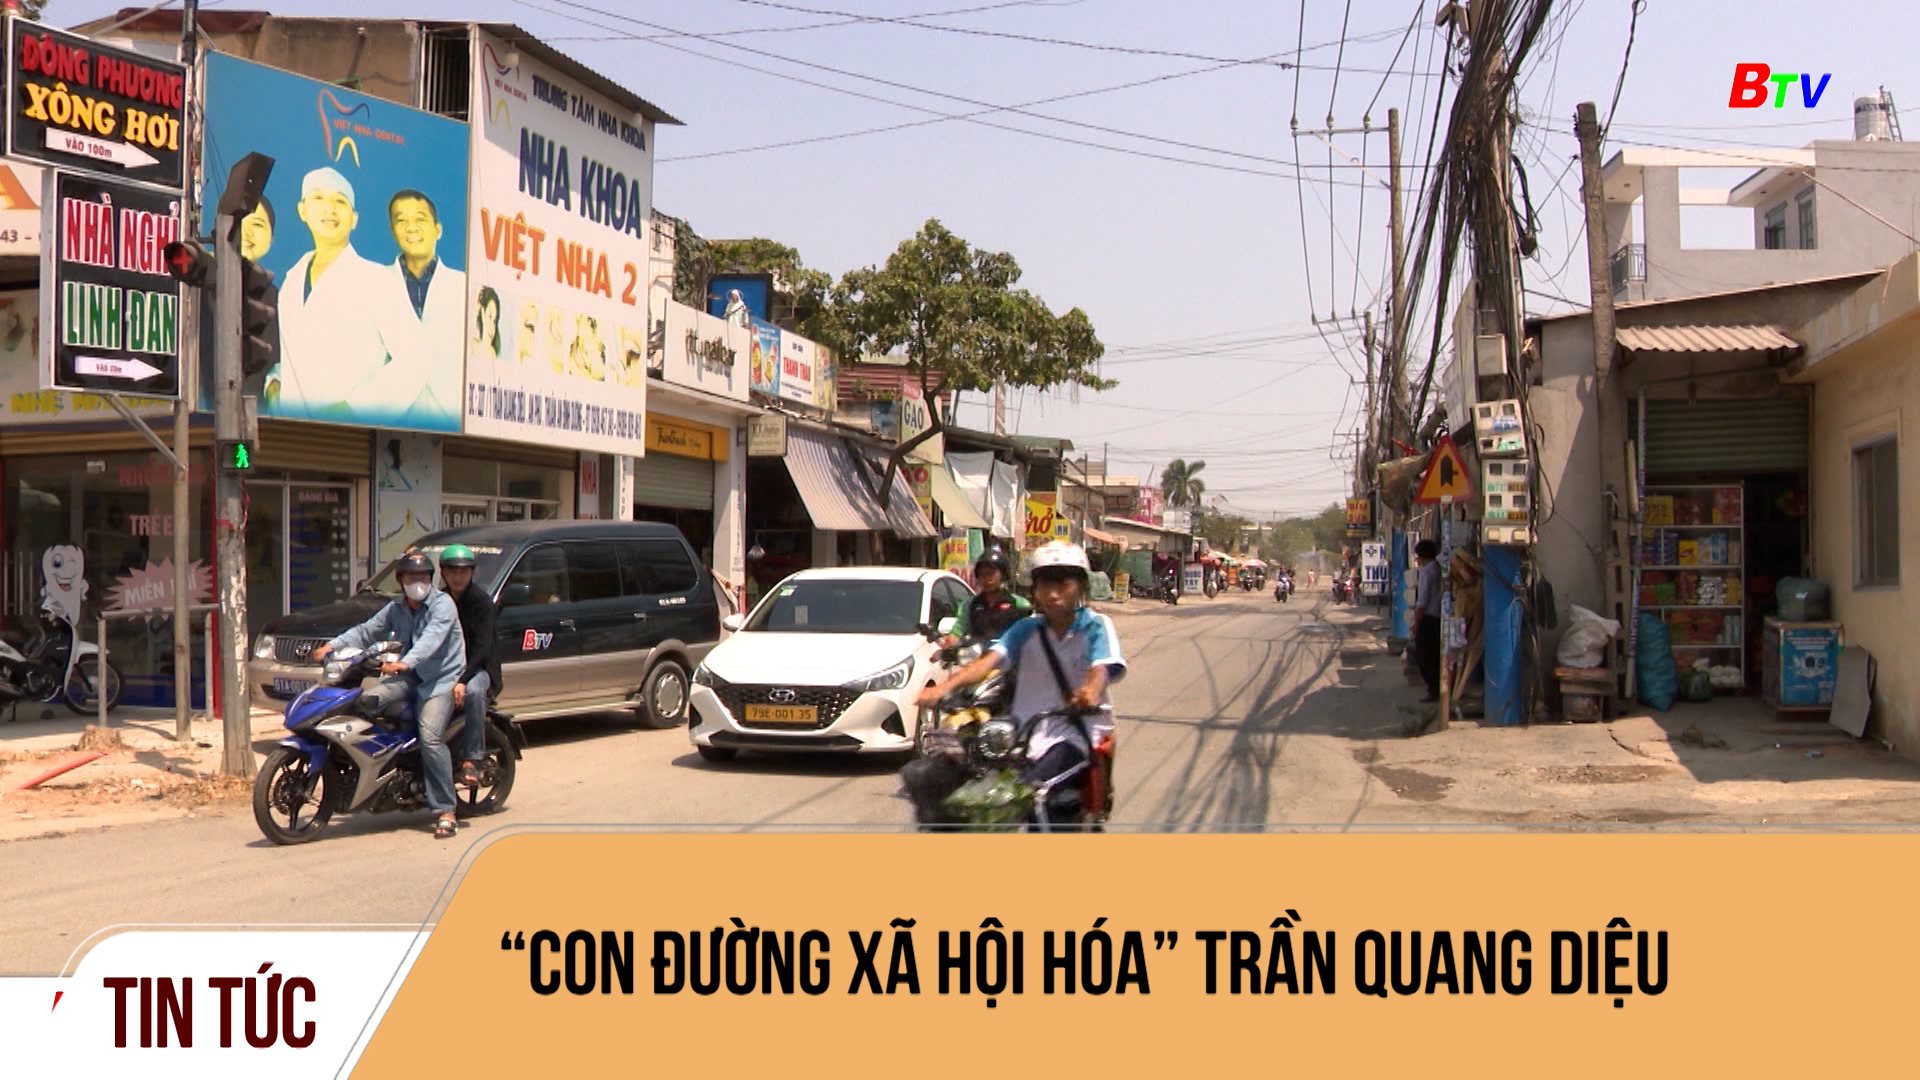 “Con đường xã hội hóa” Trần Quang Diệu